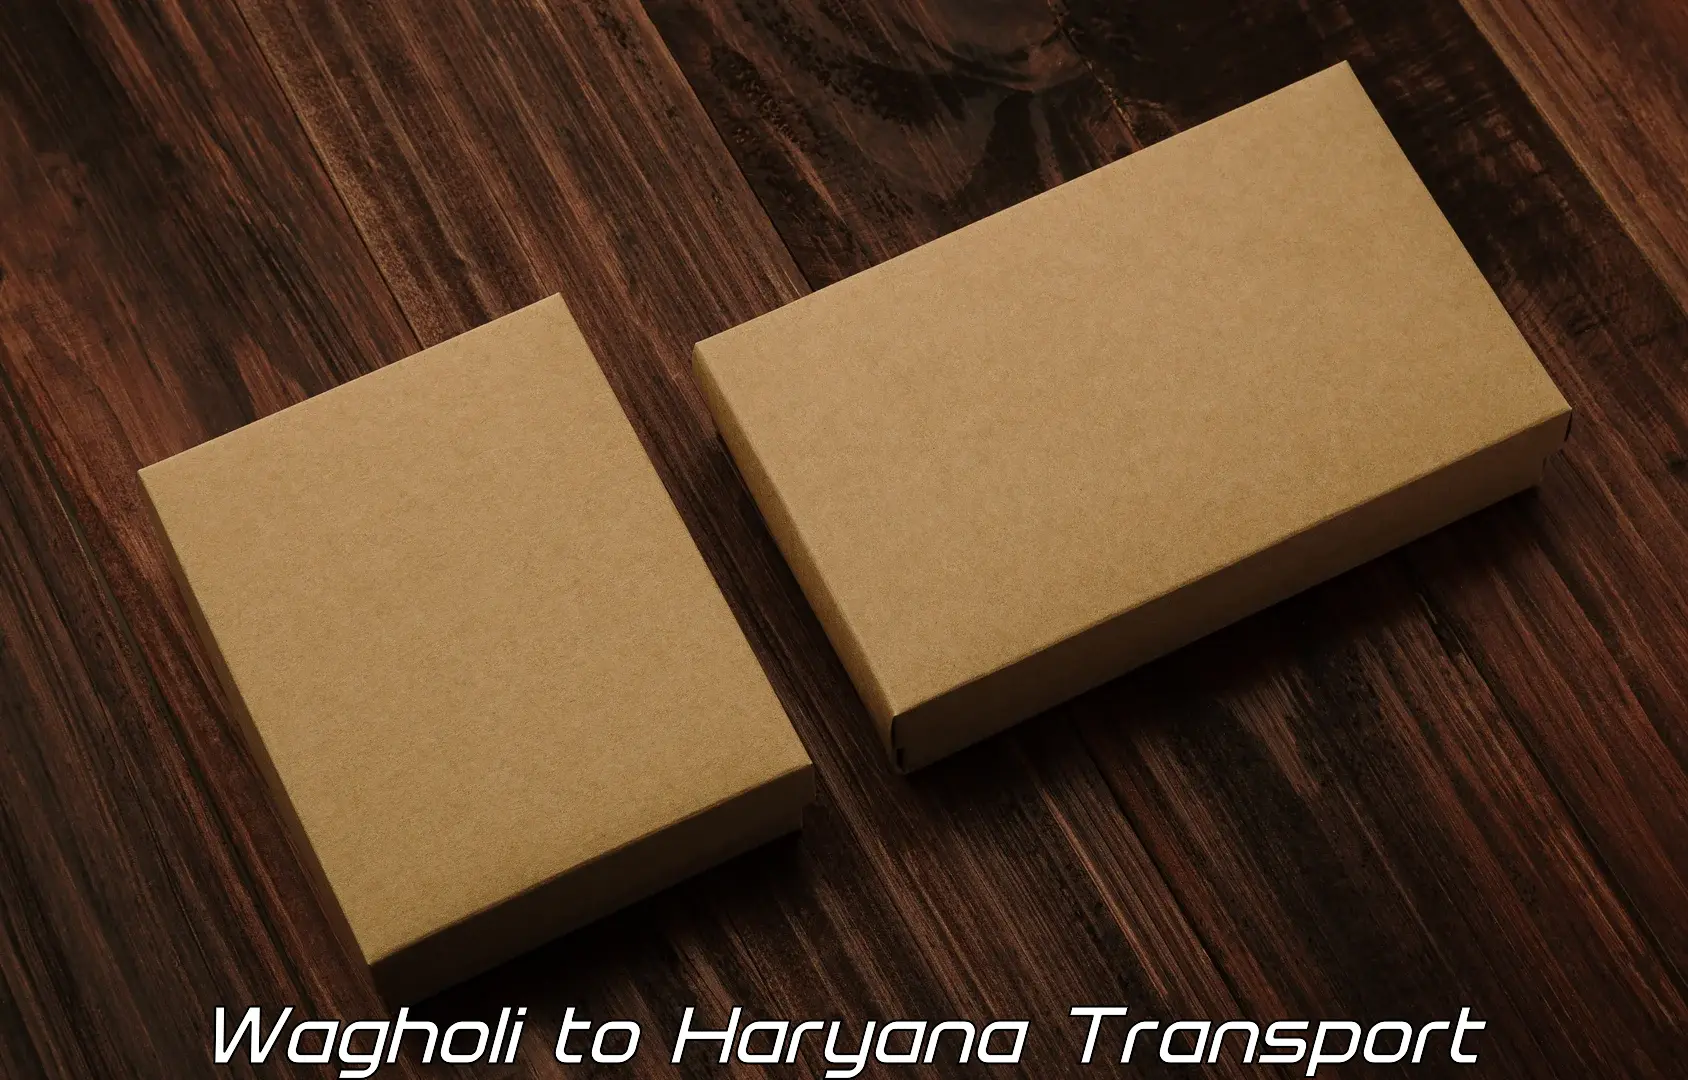 Nearest transport service Wagholi to Jind